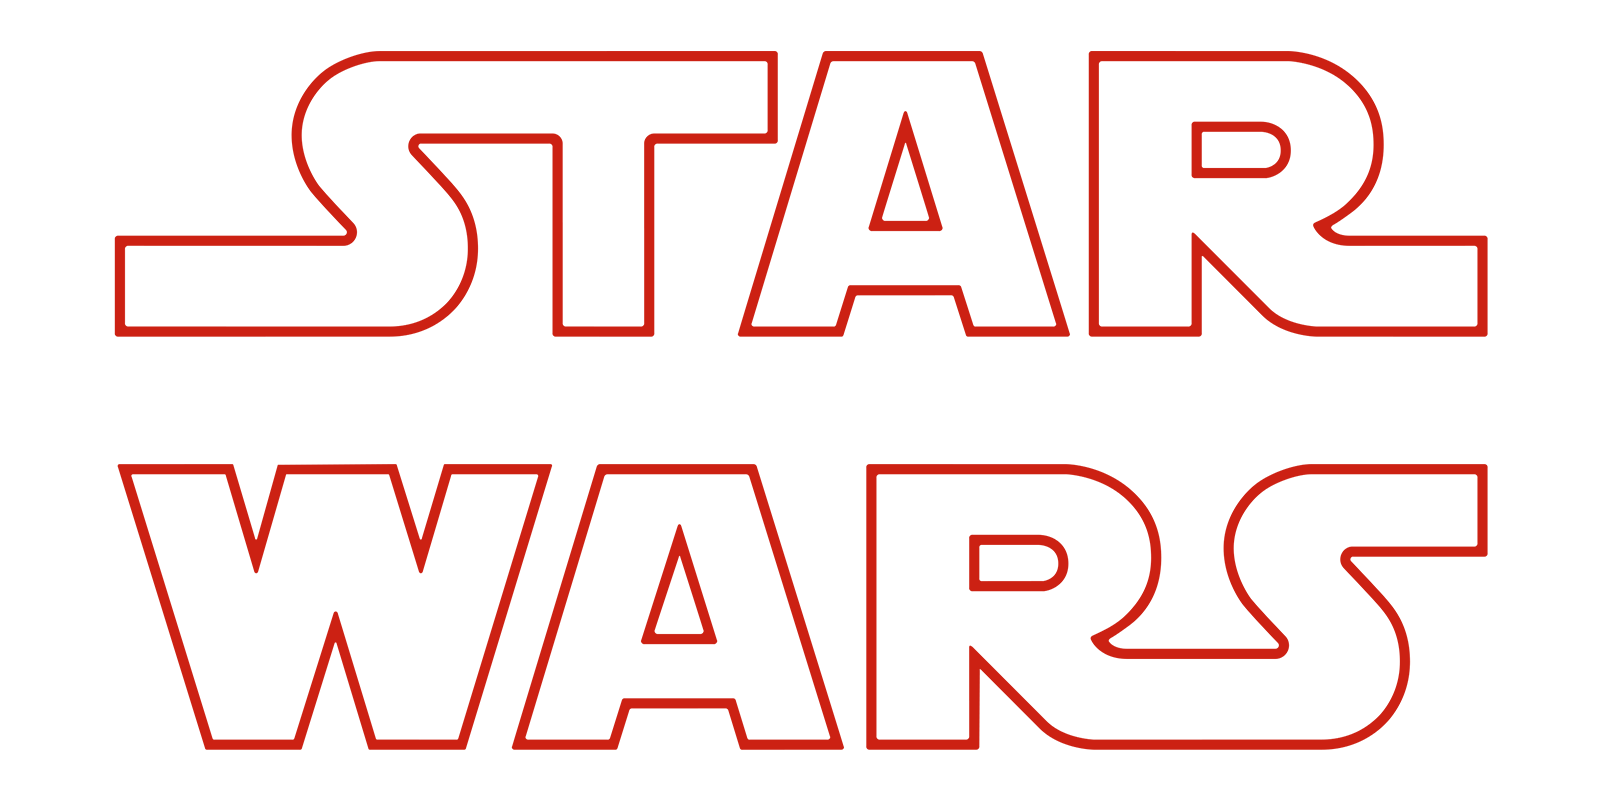 star wars the last jedi full movie spacemov